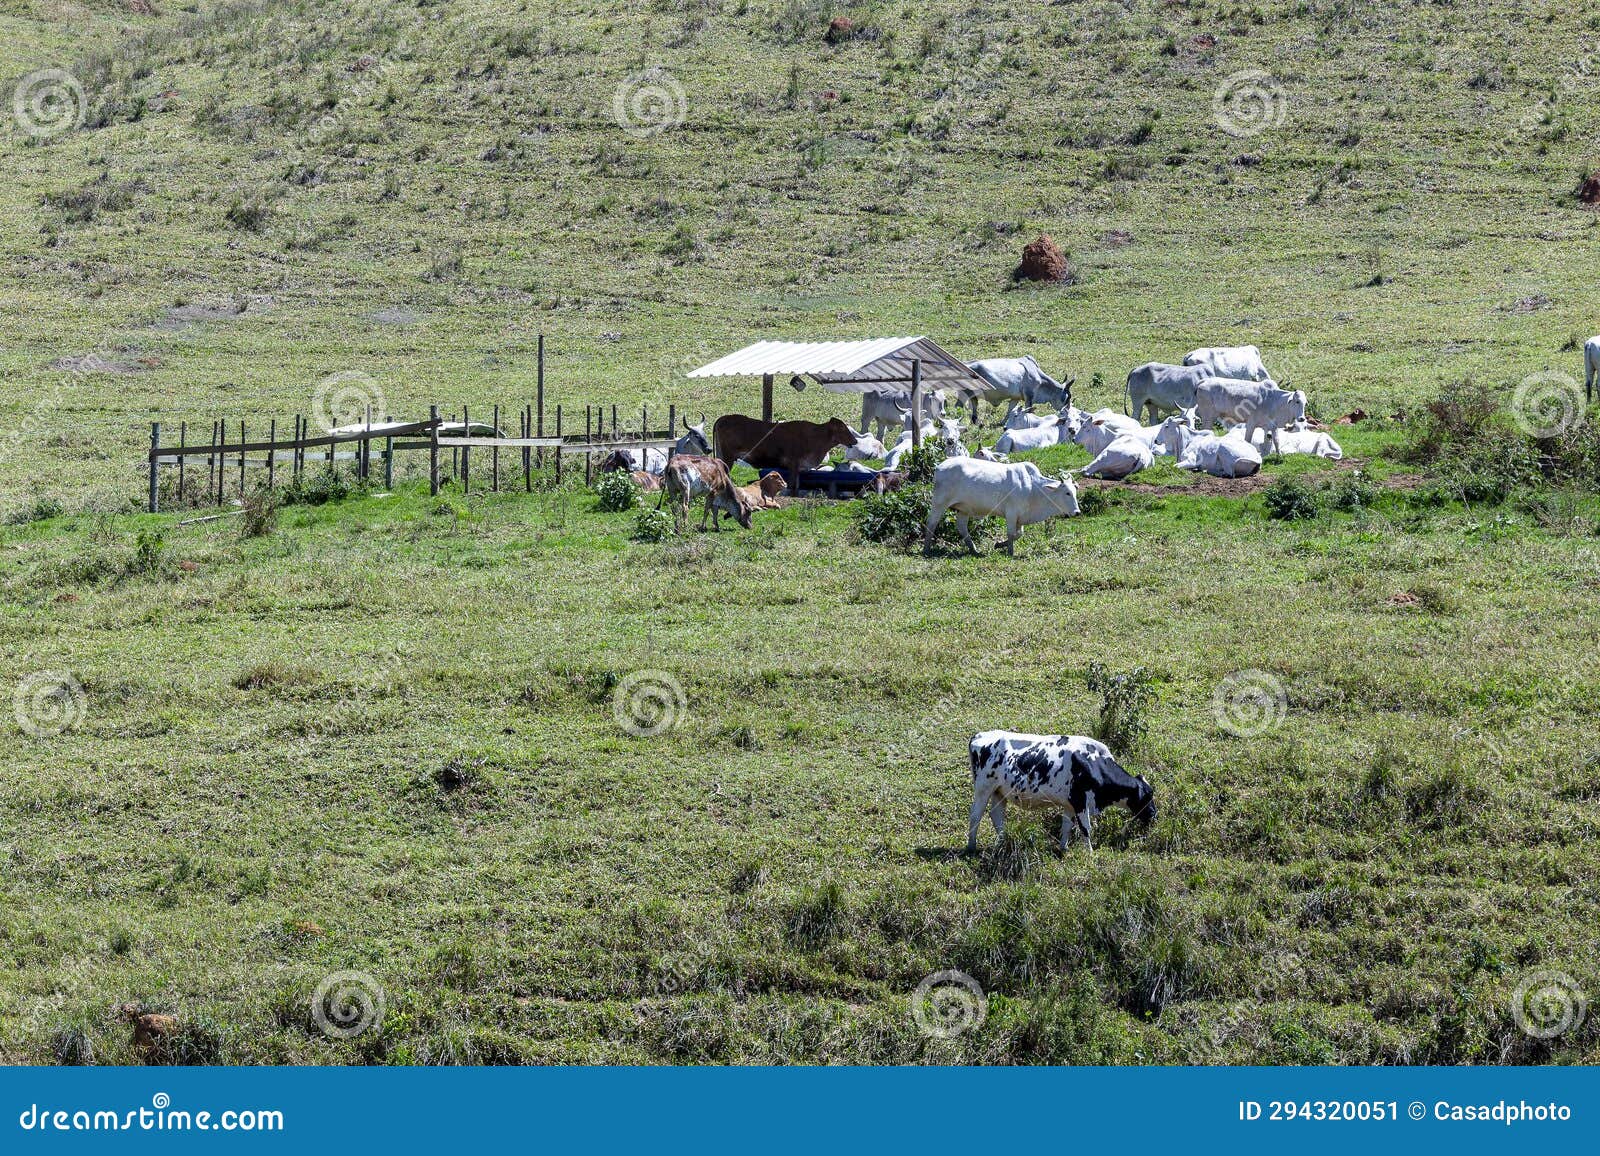 nelore no pasto de uma fazenda no interior do estado de minas gerais brasil. gado para engorda